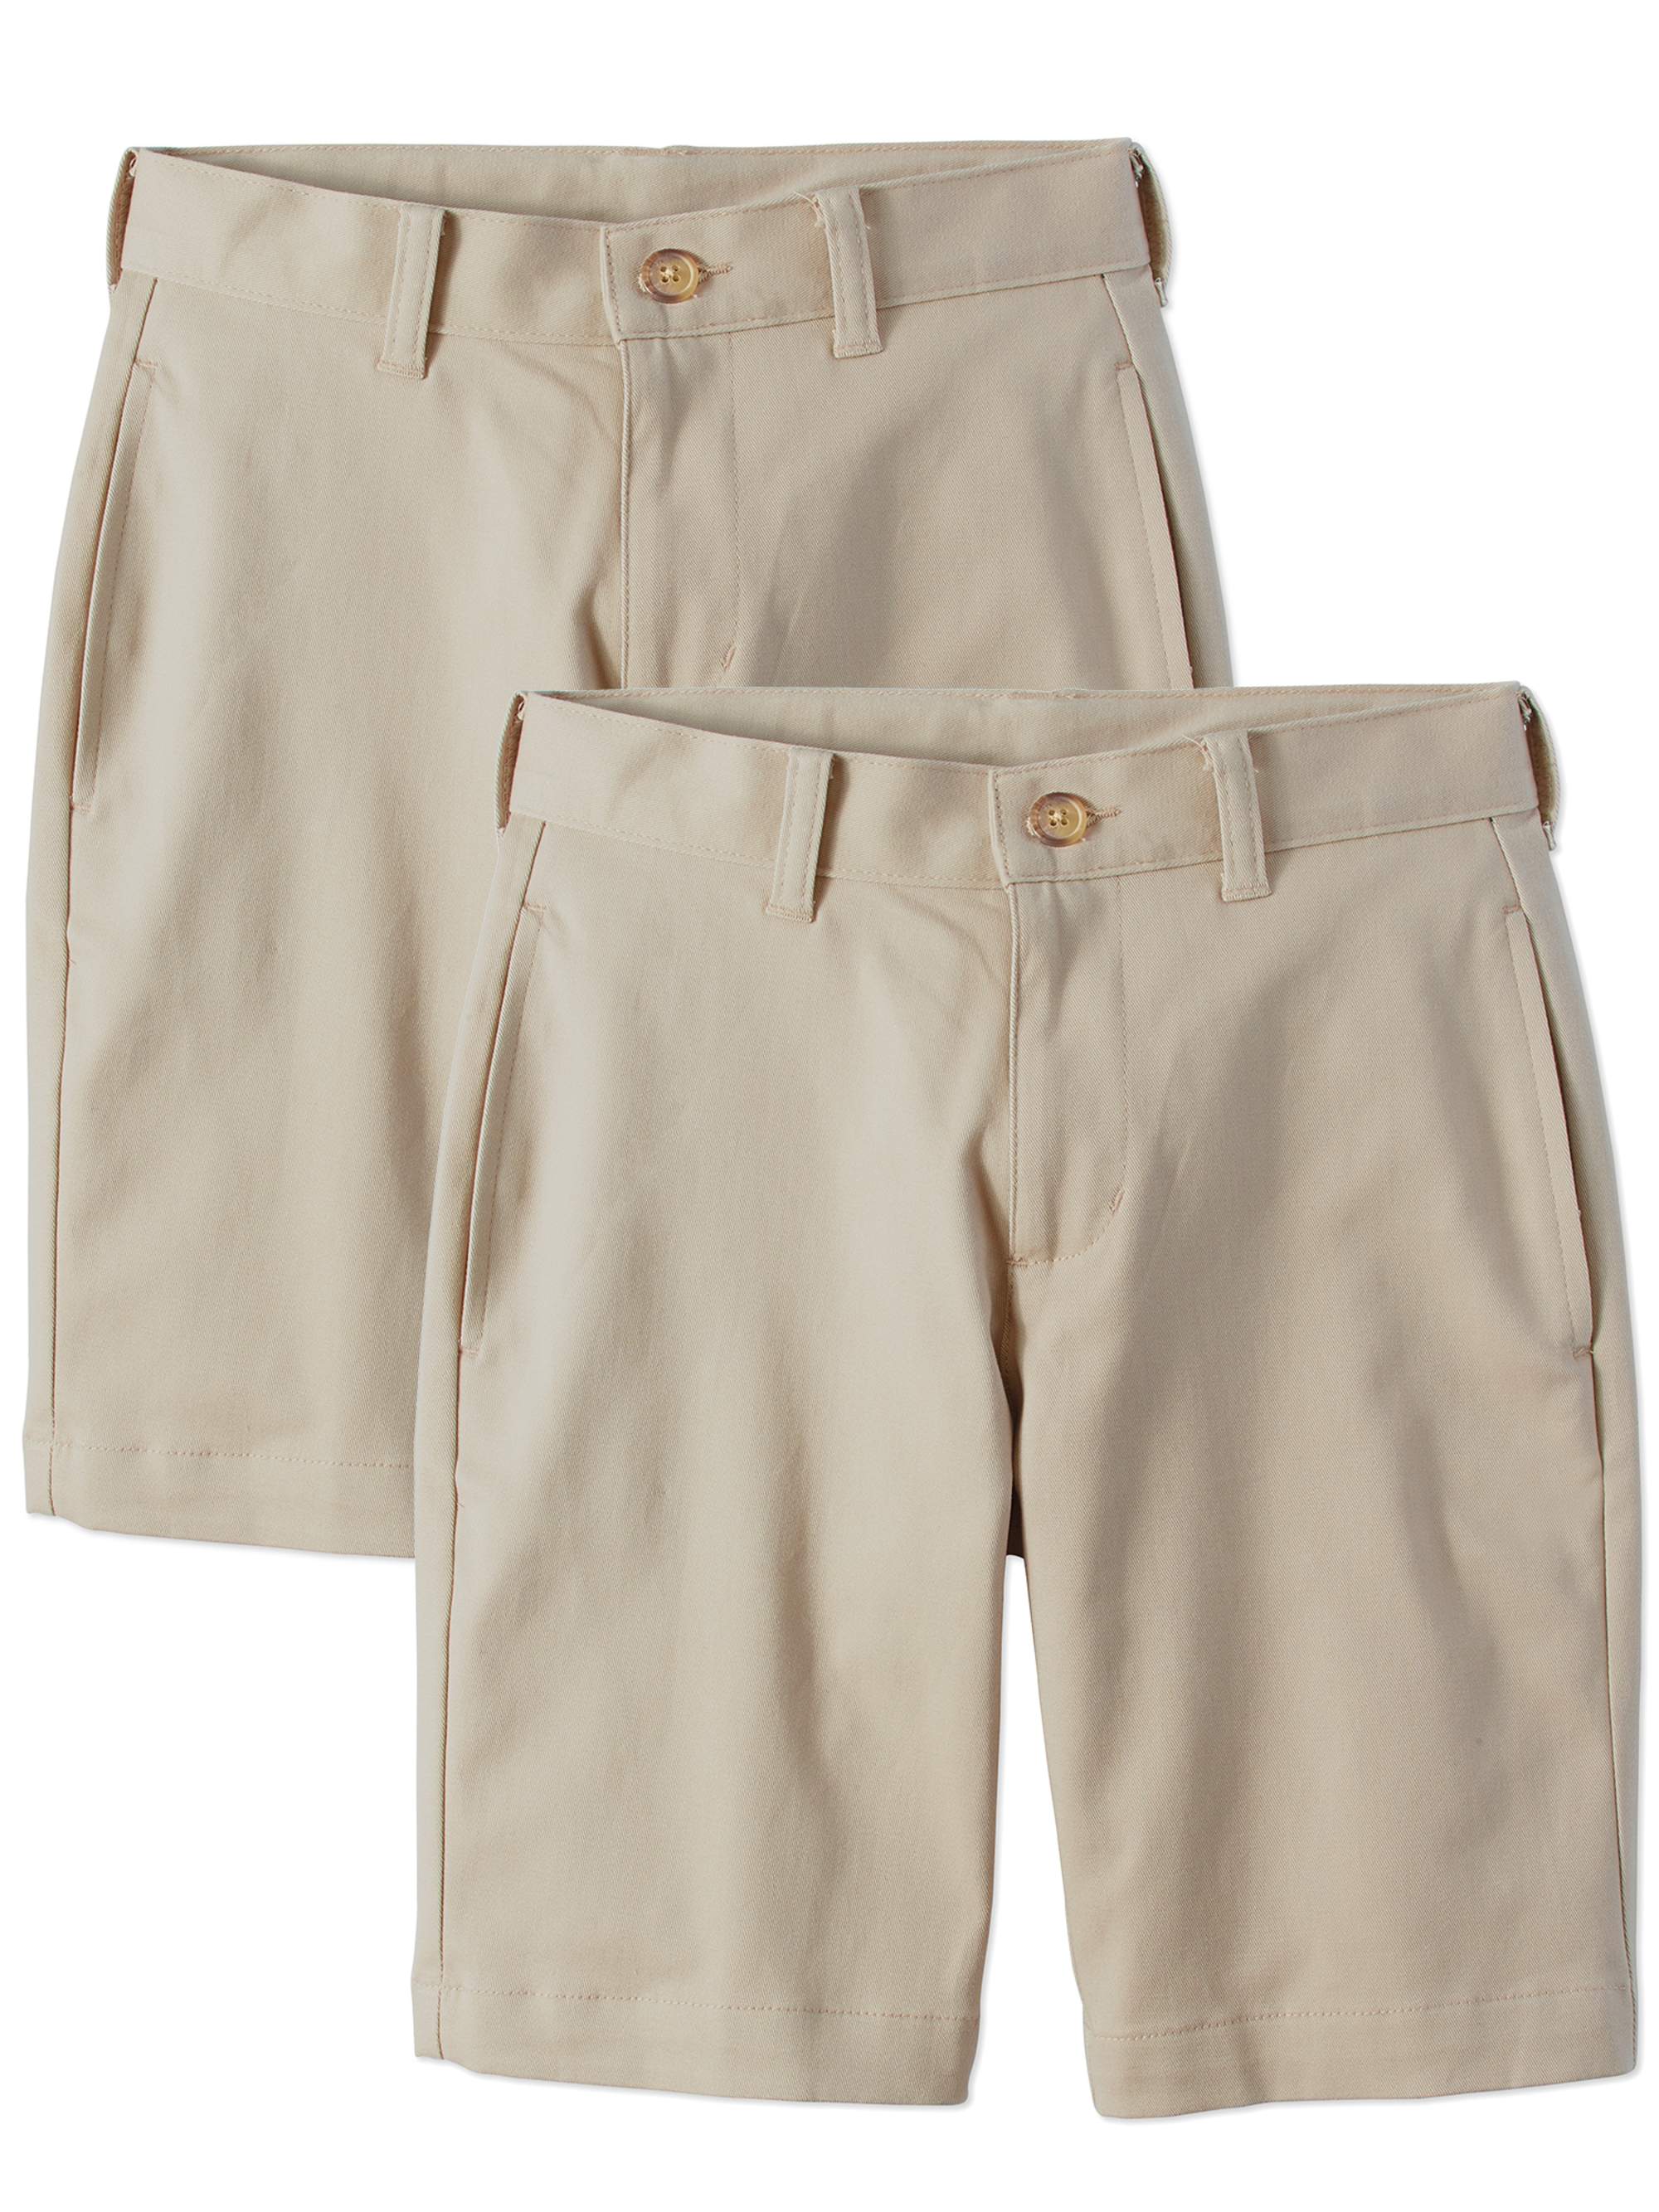 Wonder Nation Boys 4-16 School Uniform Super Soft Flat Front Shorts, 2-Pack Value Bundle - image 1 of 1